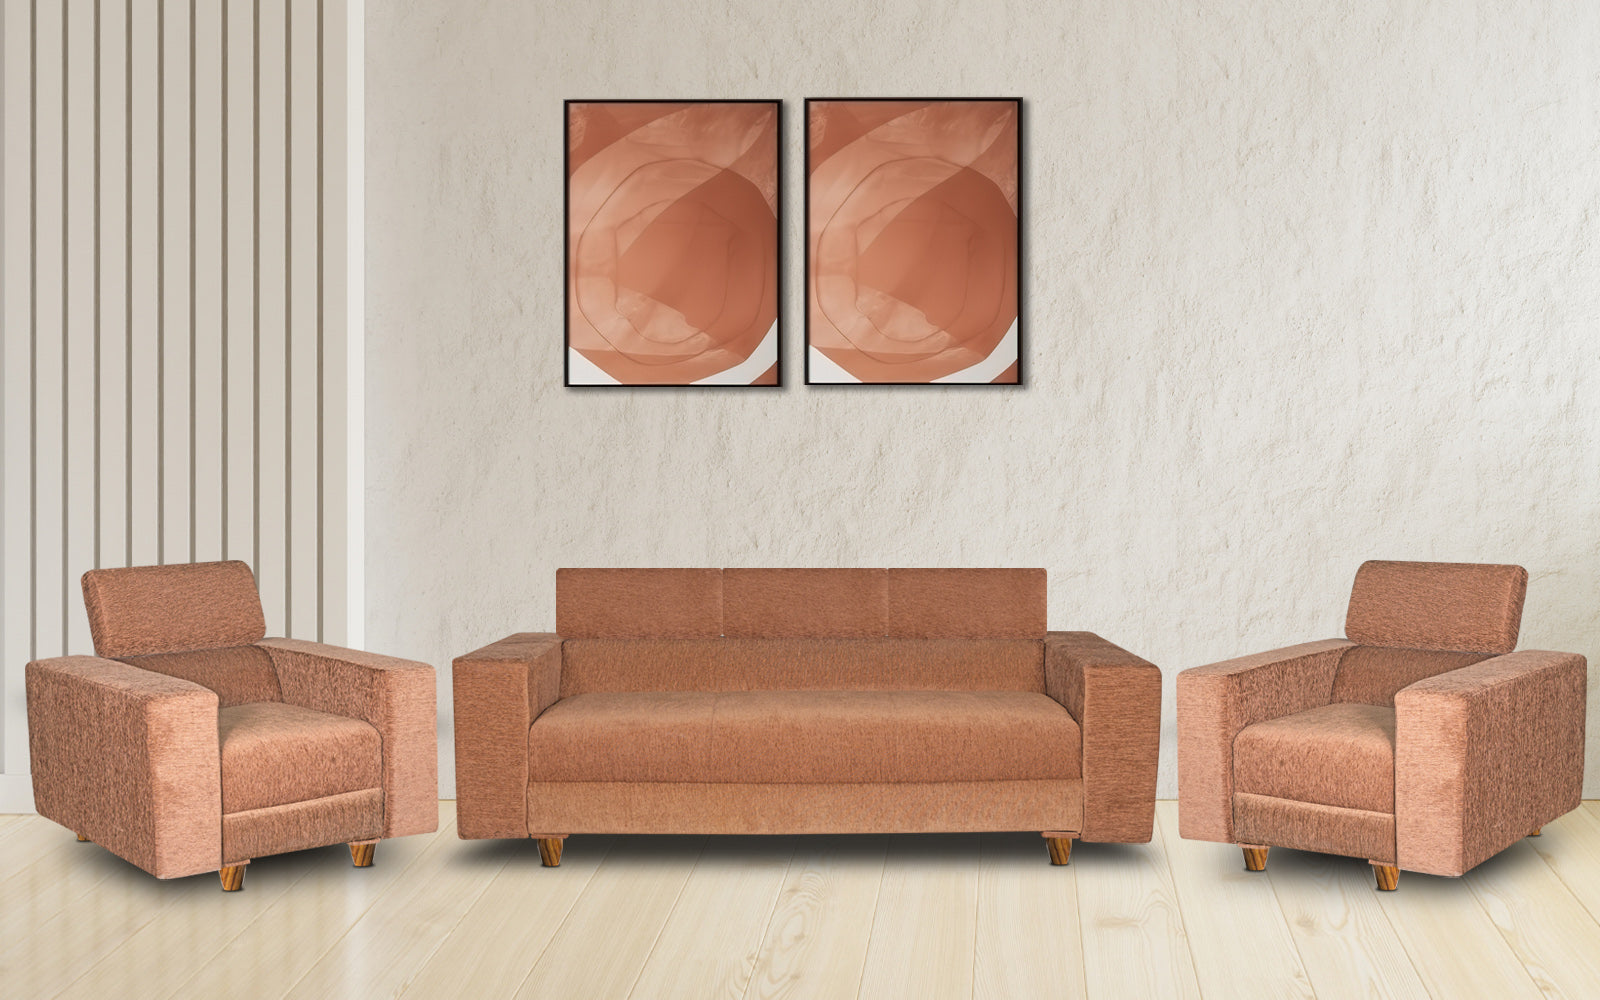 Berlin 5 Seater Sofa Set, Chenille Molfino Fabric (Finish Color - Beige, Style - 3 + 1+ 1)